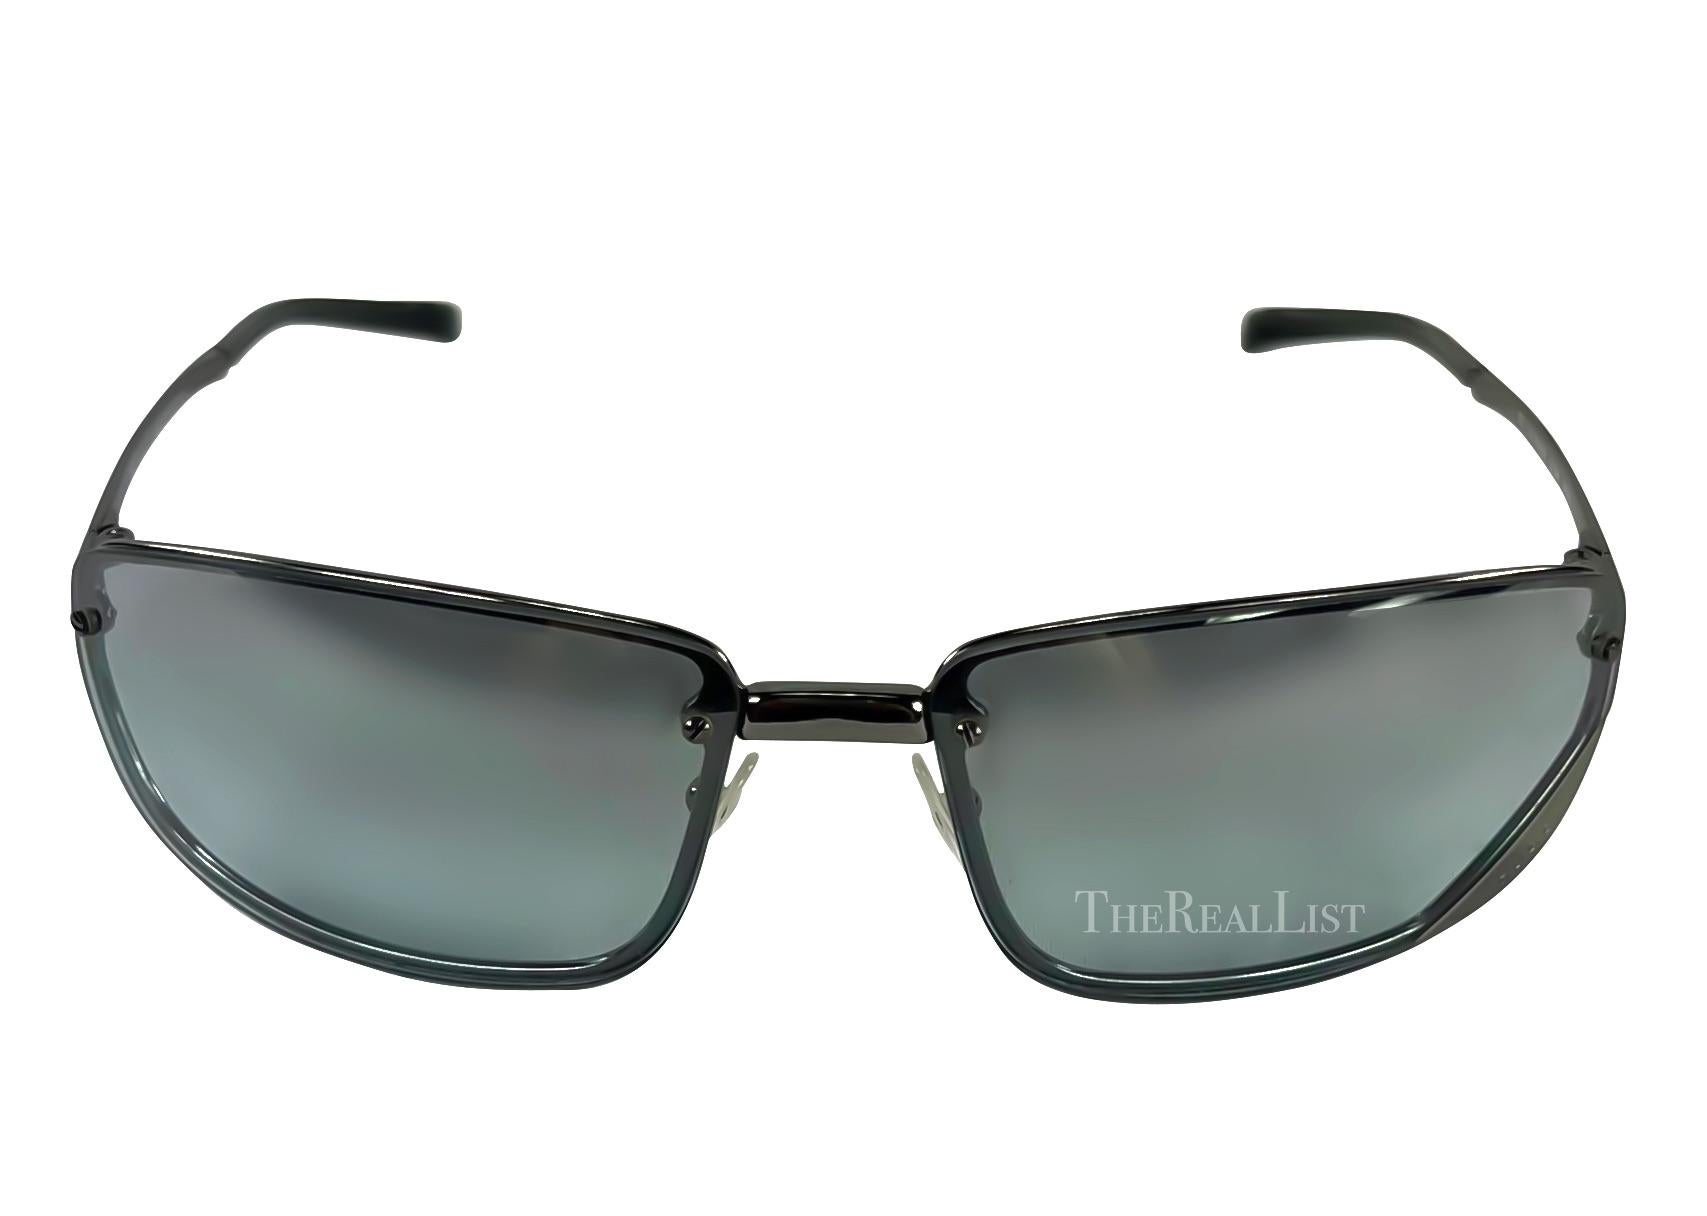 Présentation d'une paire de lunettes de soleil Gucci gris métallisé, conçues par Tom Ford. Datant de la fin des années 1990, ces abat-jours rectangulaires respirent l'élégance contemporaine. Les lentilles chromées légèrement teintées ajoutent une